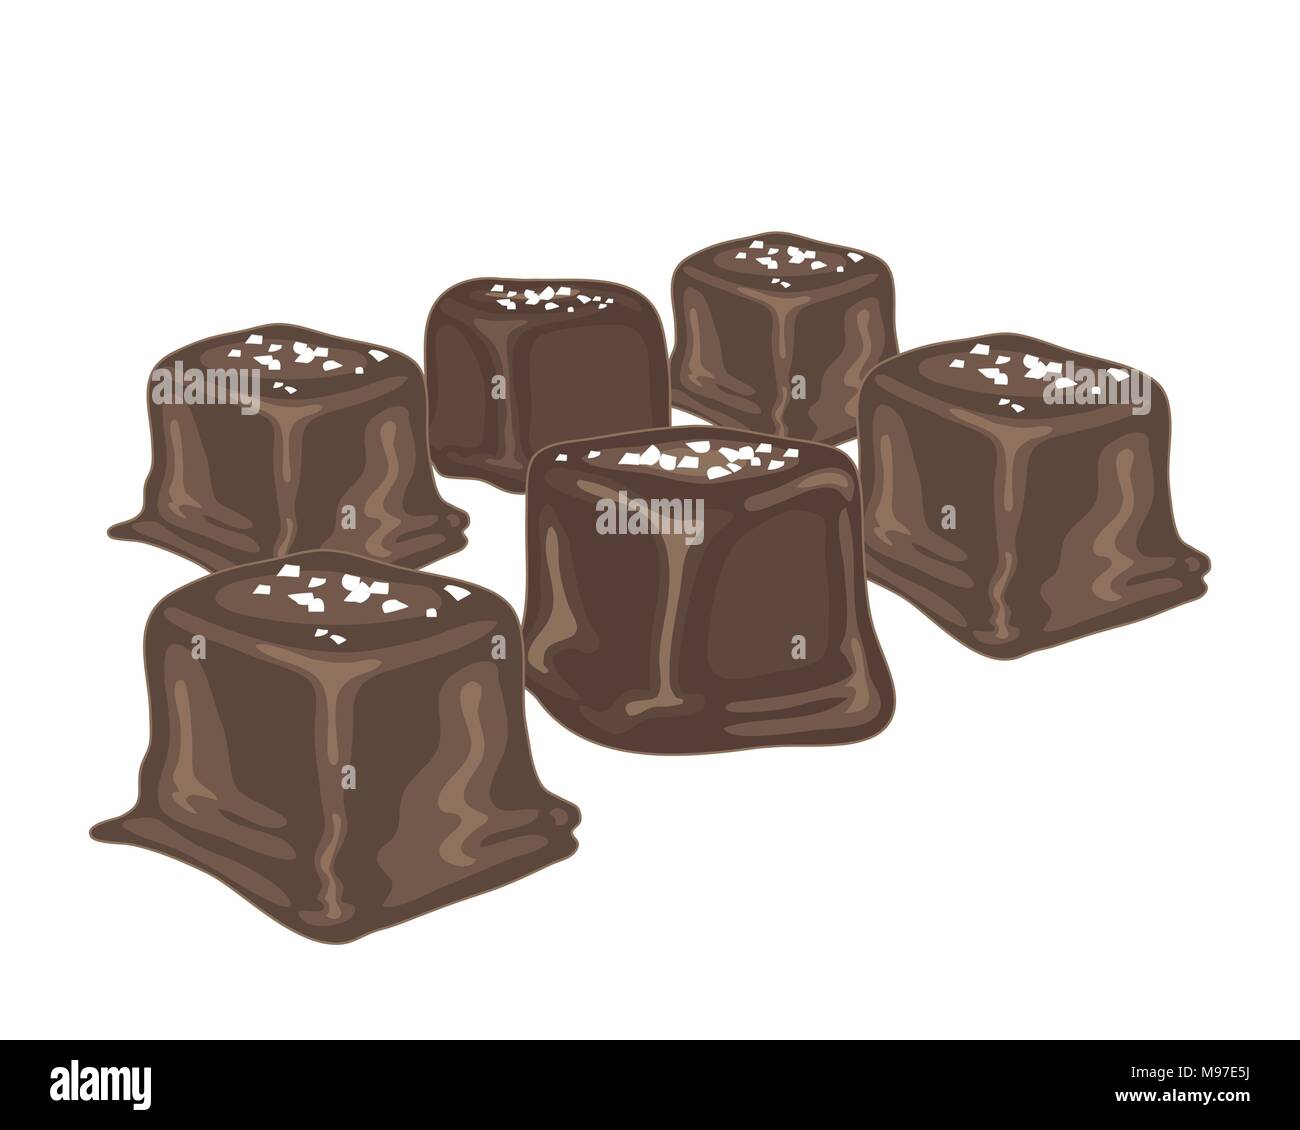 Un vecteur illustration au format eps de caramel au beurre salé bonbons enrobées de chocolat sur un fond blanc Illustration de Vecteur